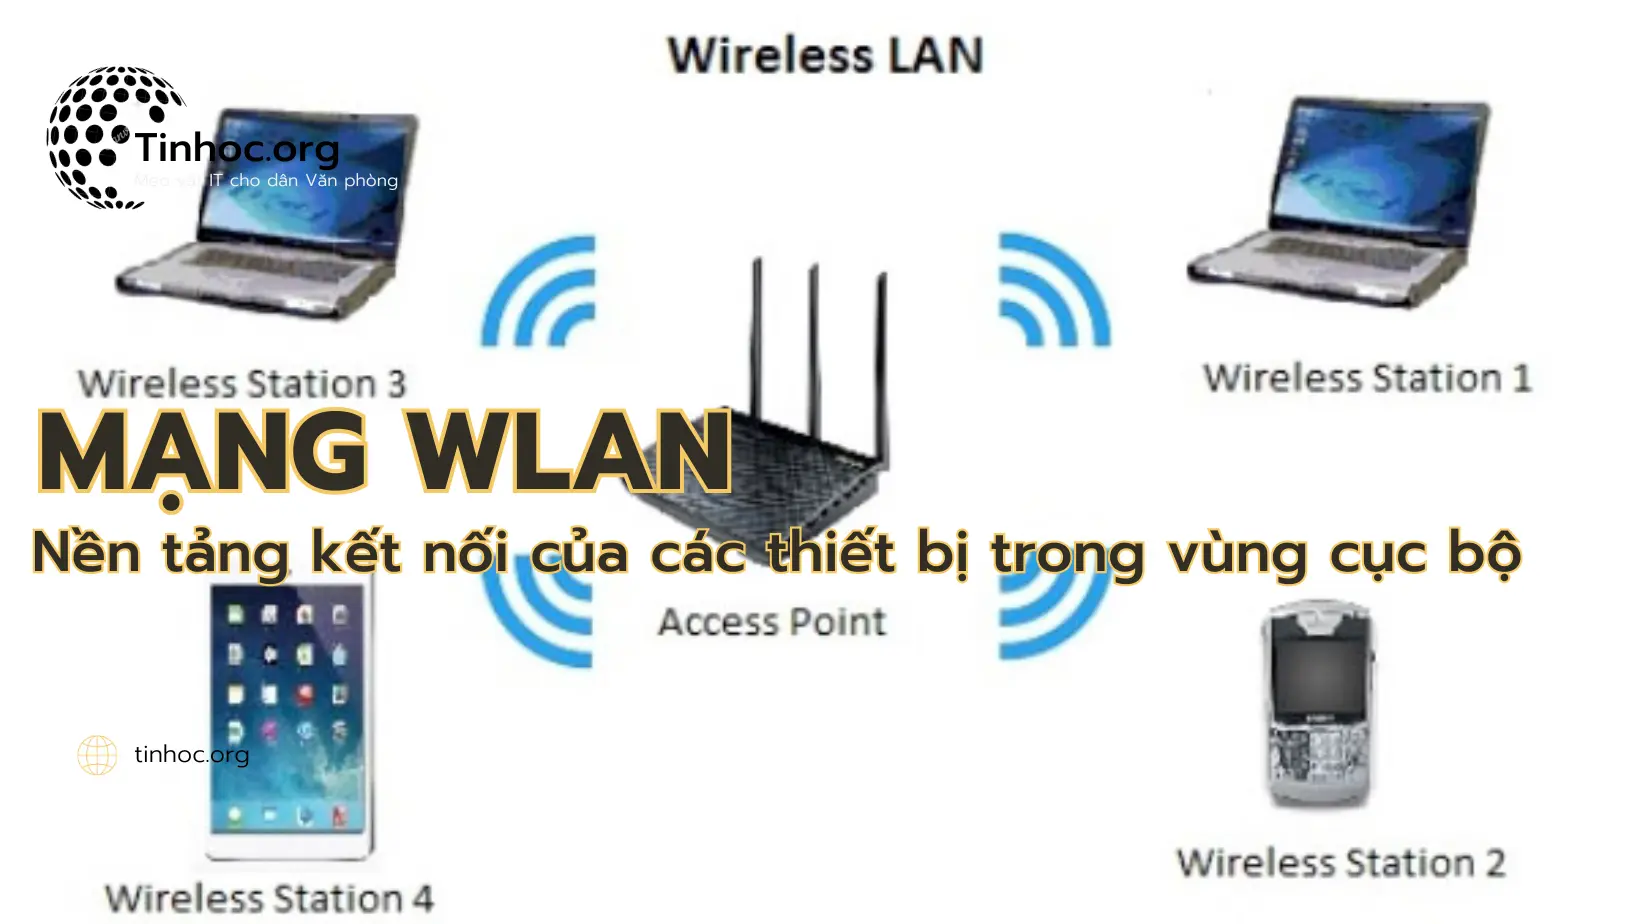 Tổng quan về mạng WLAN, bao gồm cơ chế hoạt động, các dịch vụ, tiêu chuẩn và giao thức, thách thức và vấn đề, cũng như tương lai và phát triển của mạng.